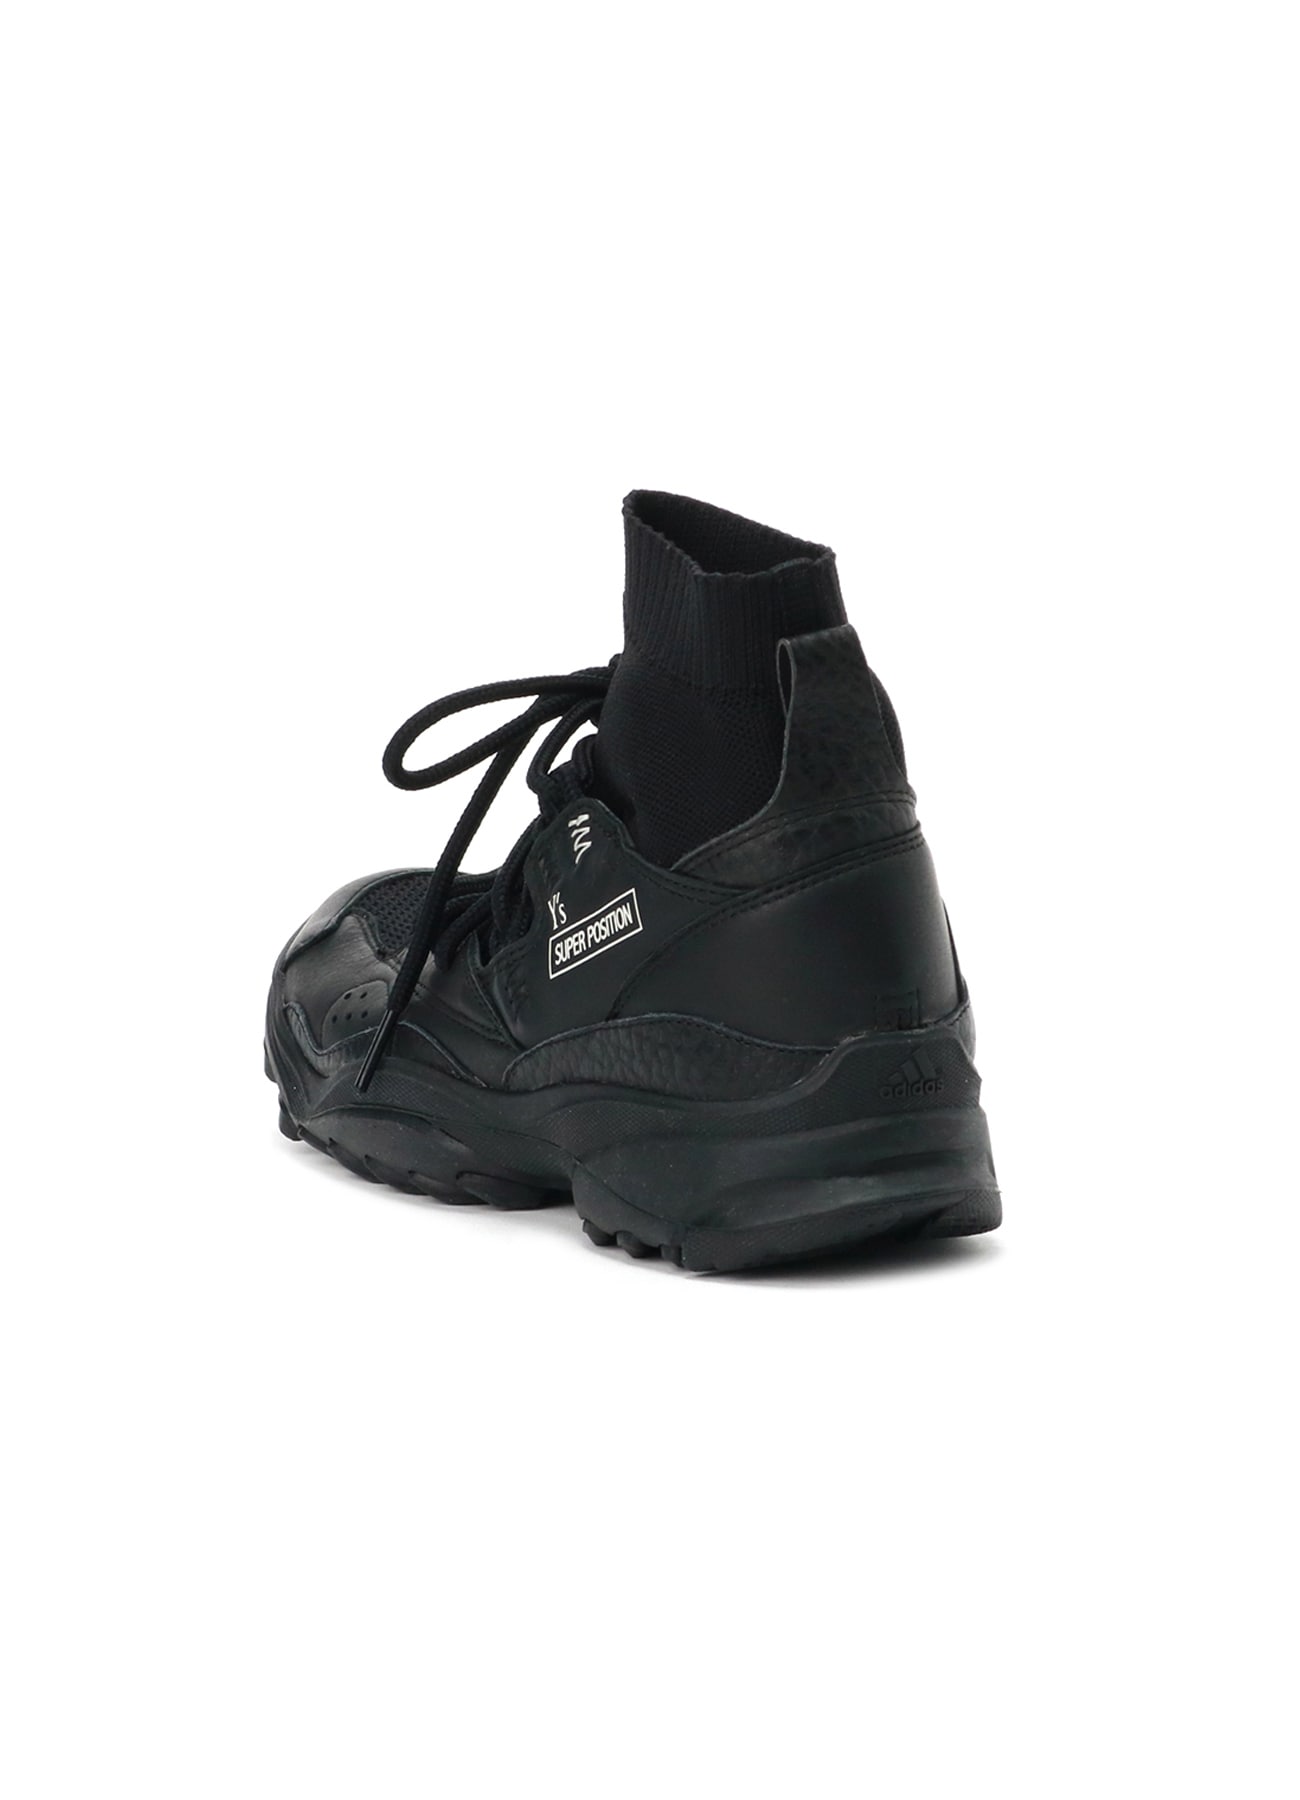 Y's x adidas]Y's SEEULATER x GSG9(US 5 Black x Black): Y's| THE 